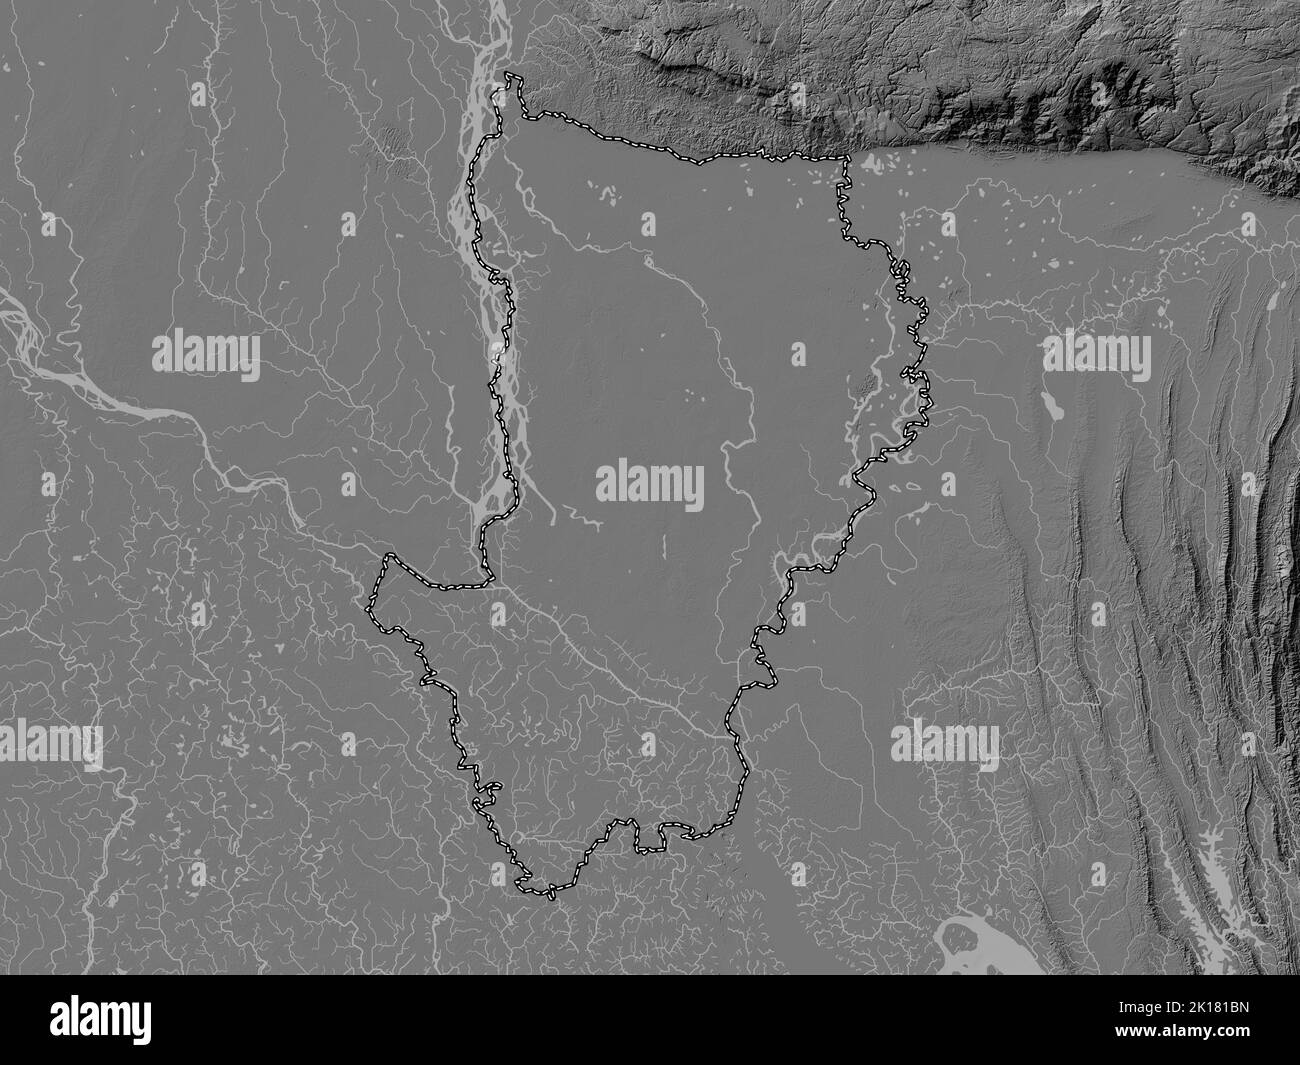 Dhaka, division du Bangladesh. Carte d'altitude à deux niveaux avec lacs et rivières Banque D'Images